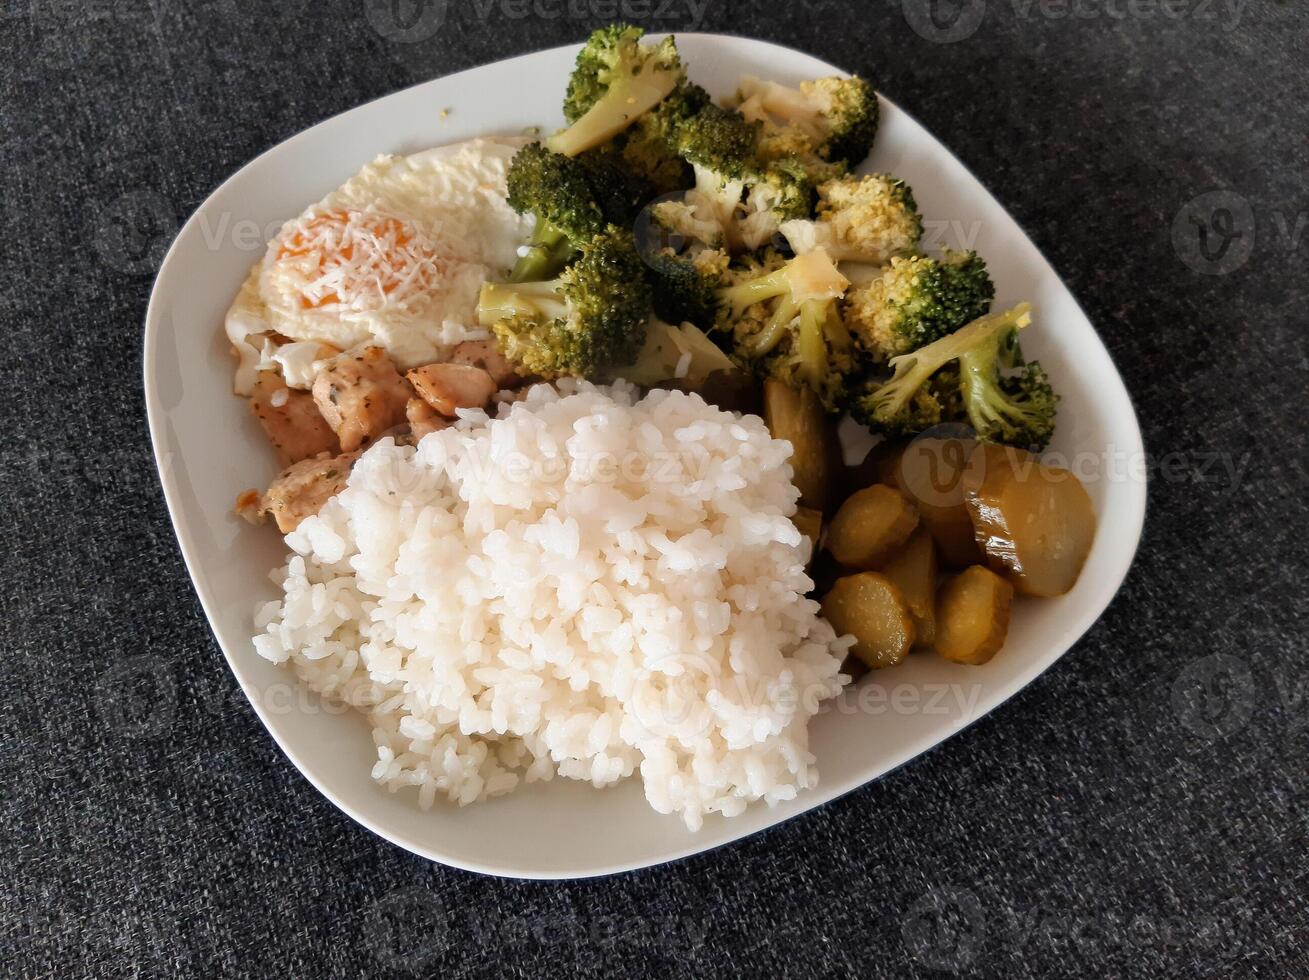 fatti in casa piatto con broccoli, fritte uova con formaggio, pollo al forno carne, riso e sottaceti servito su bianca piatto foto